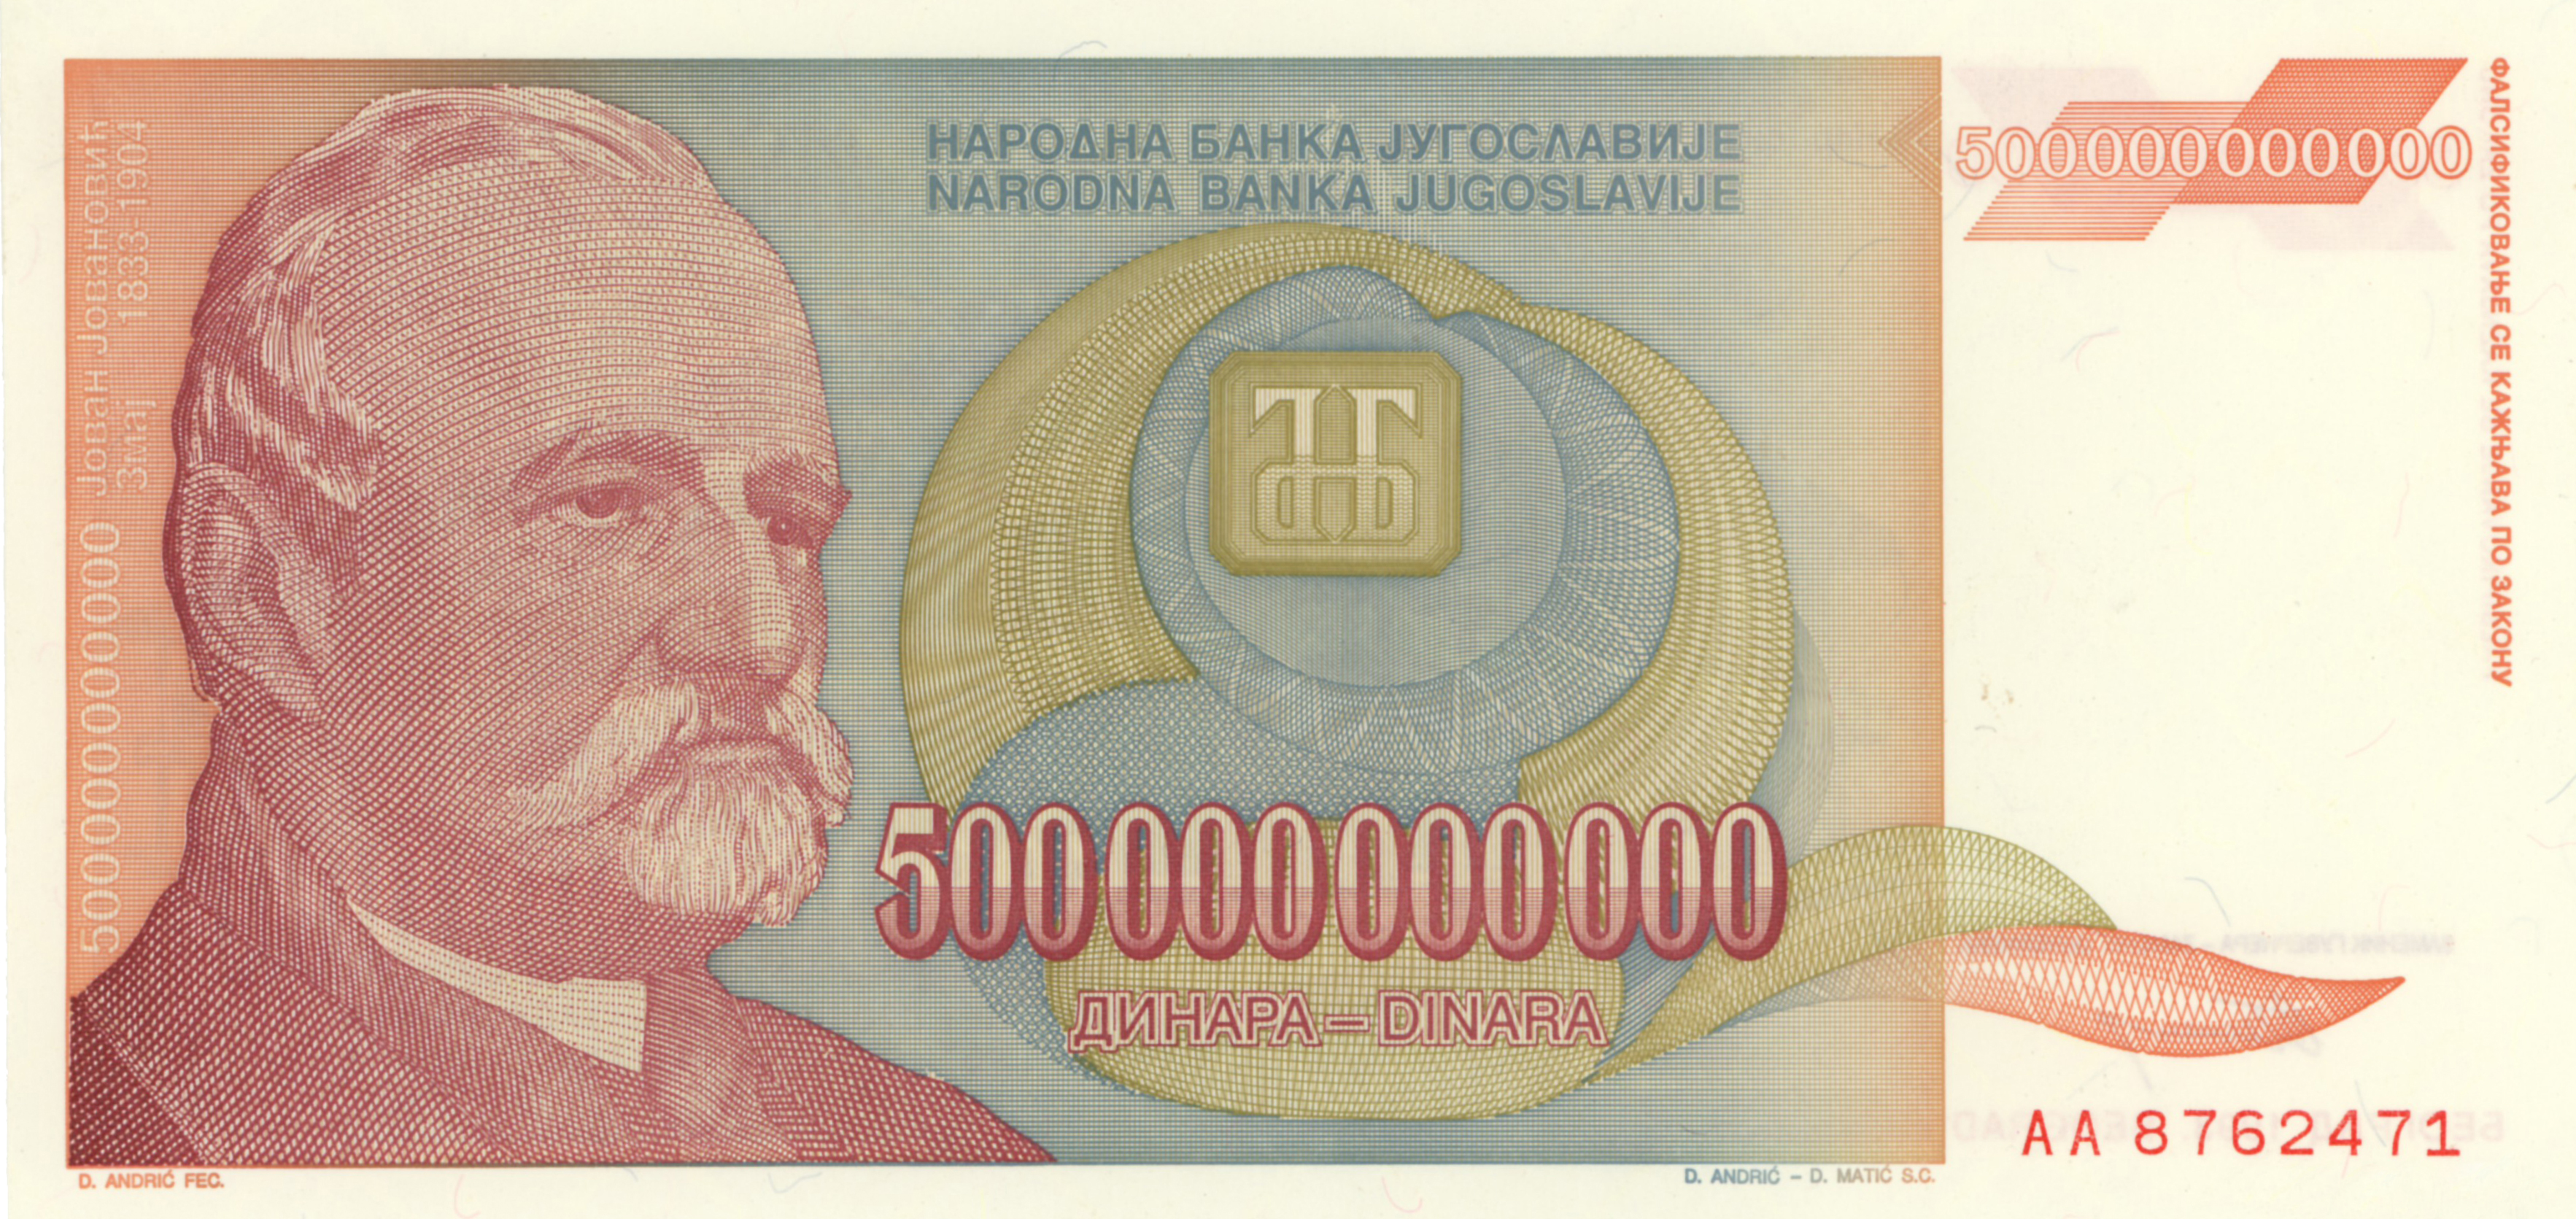 Billet de 500.000.000.000 dinars yougoslaves